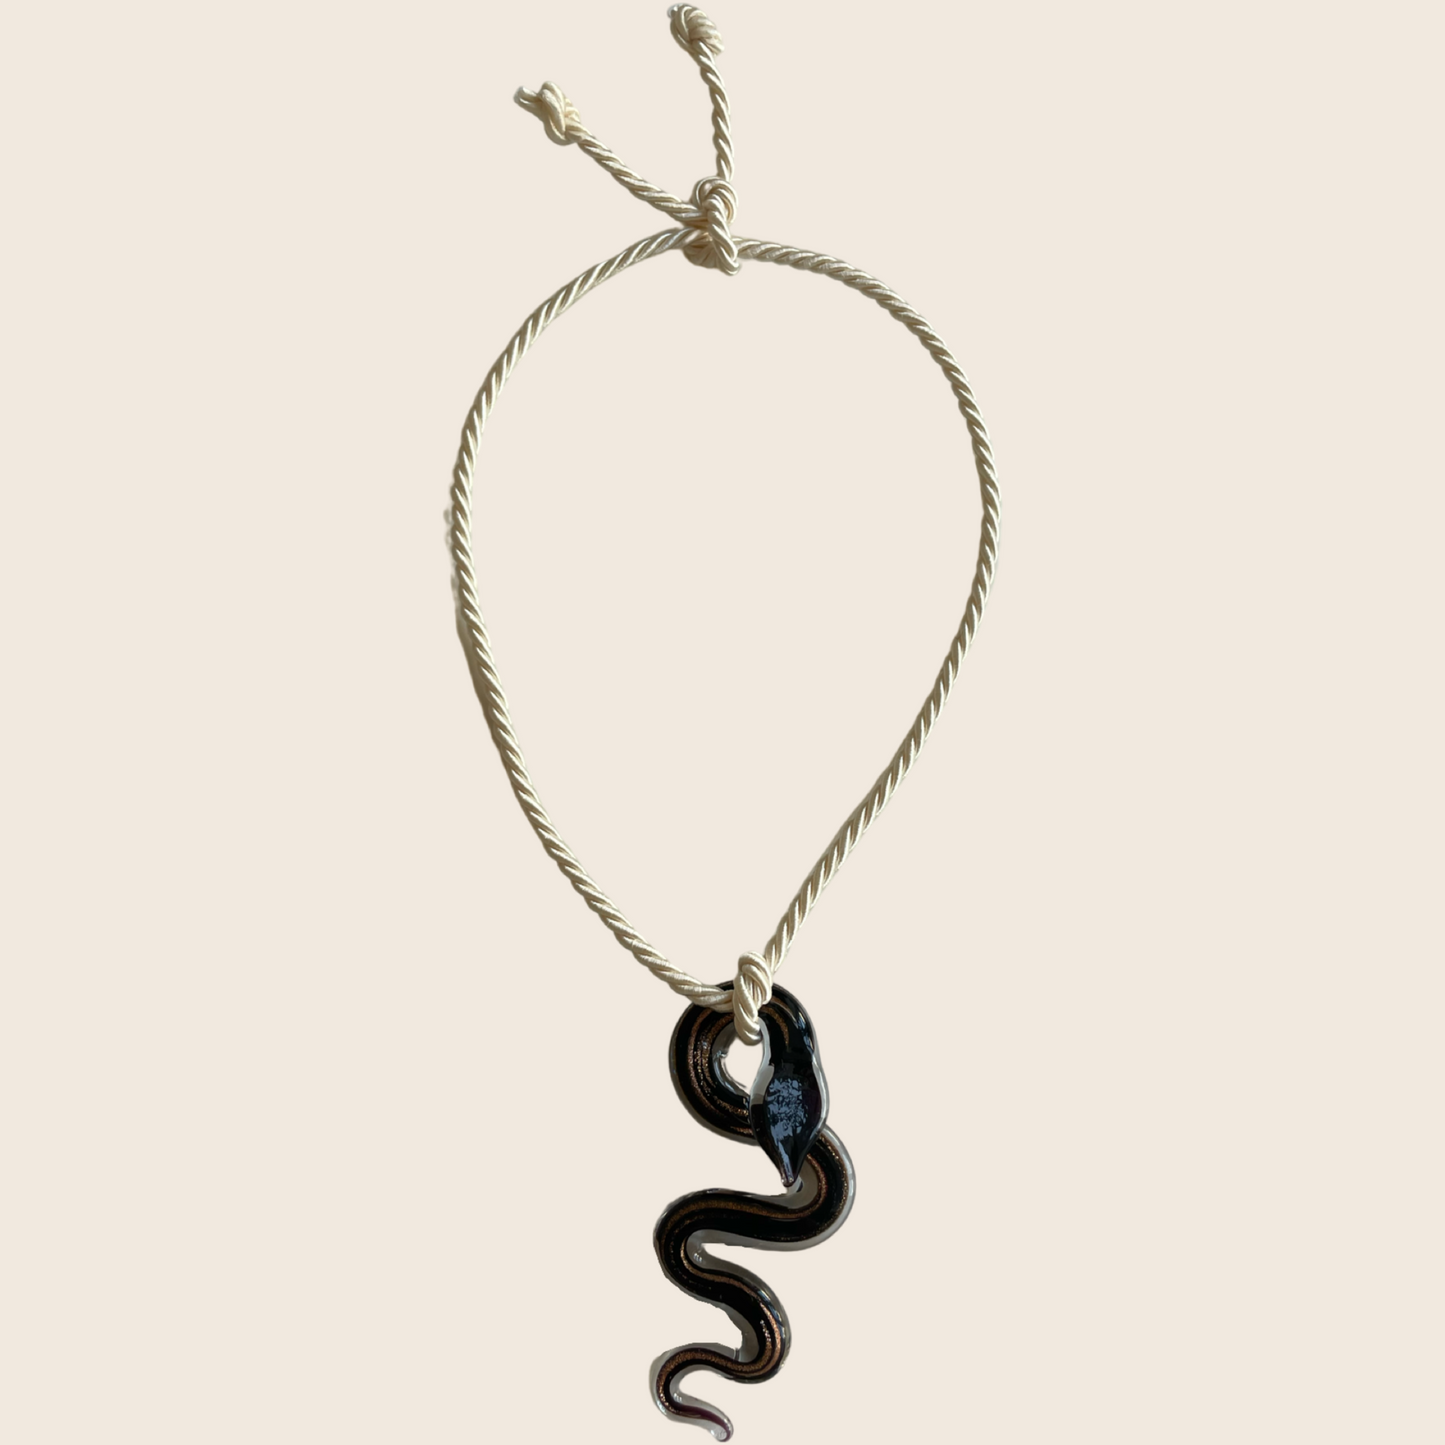 Glass Snake Necklace - Lemon Lua Glass Snake Necklace Lemon Lua Night / Beige Lemon Lua Glass Snake Necklace Glass Snake Necklace